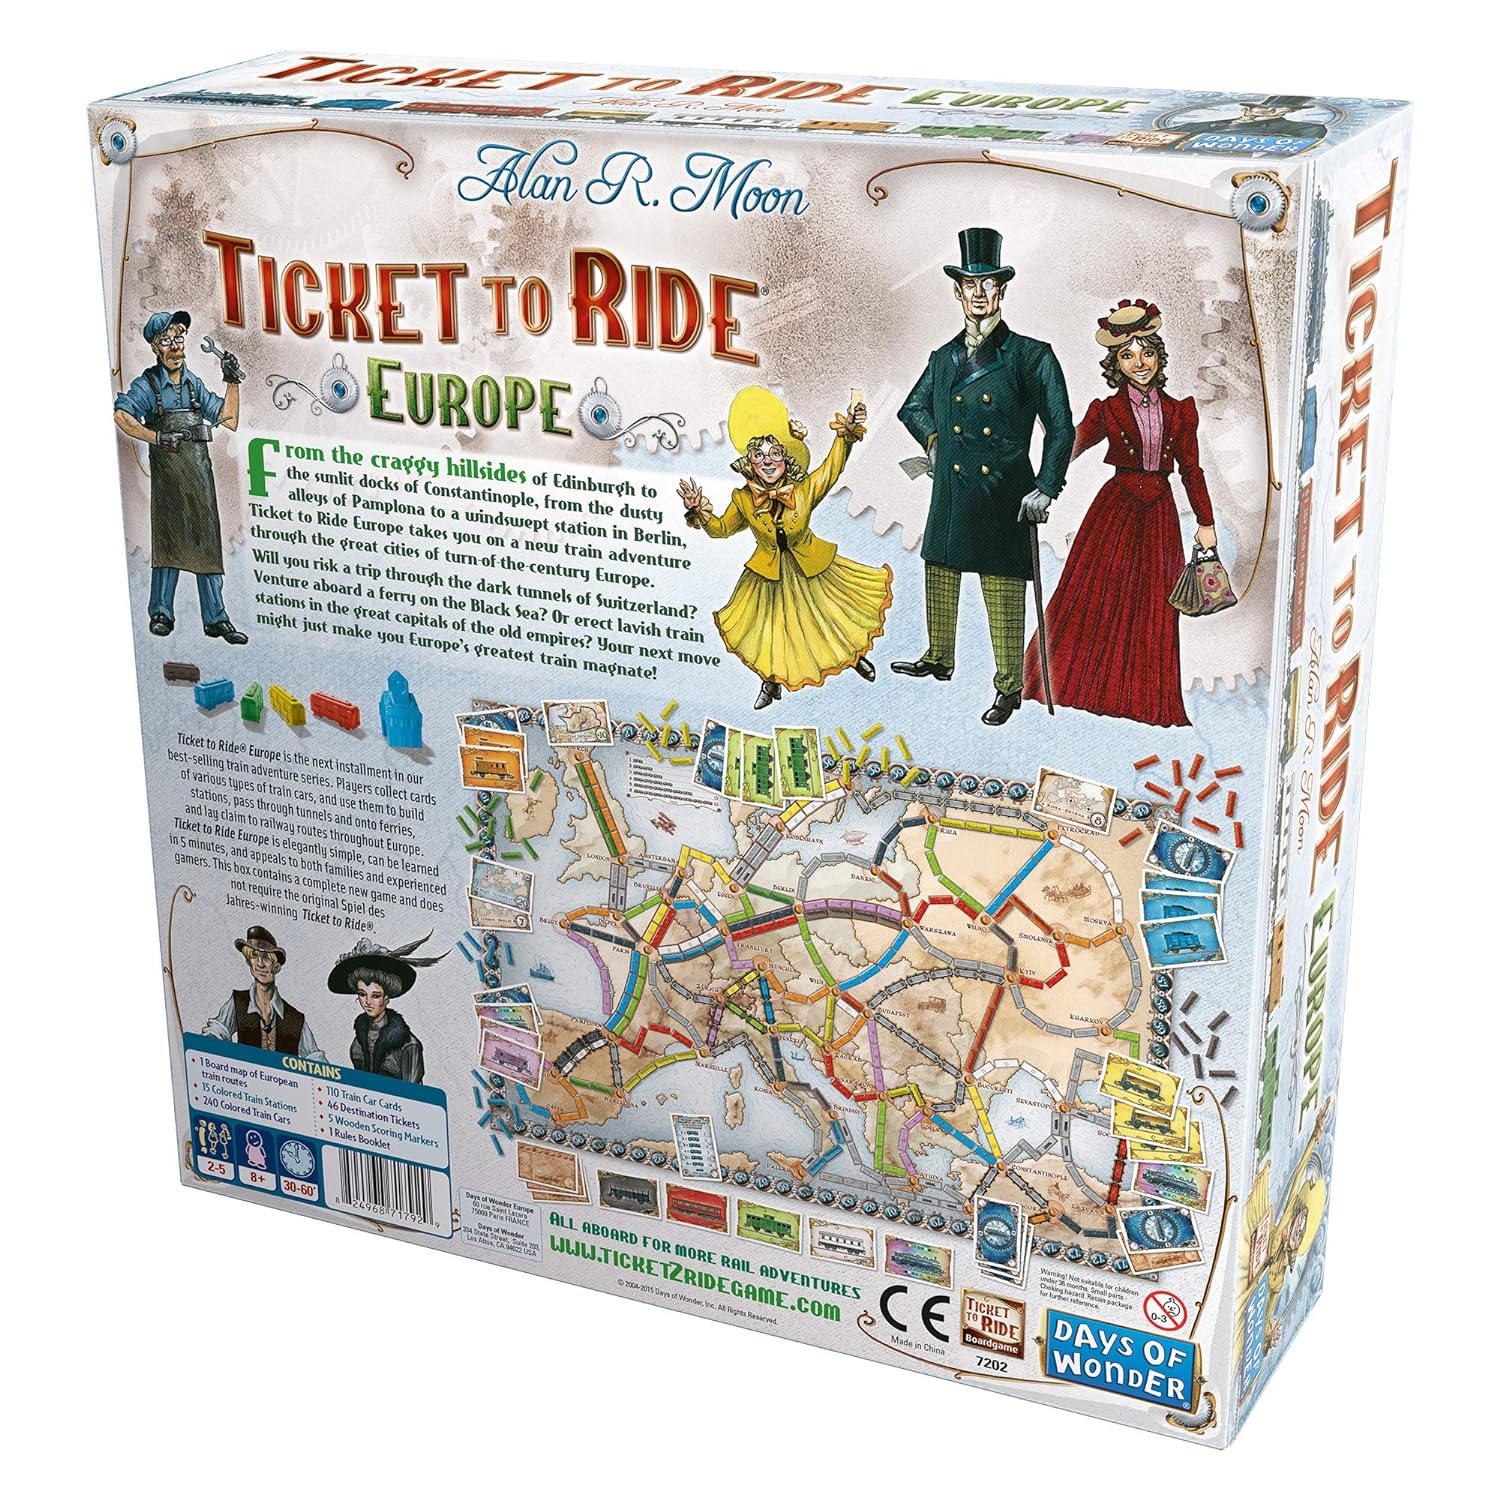 KIDS MANDI - Ticket to Ride Europe Game - Family fun